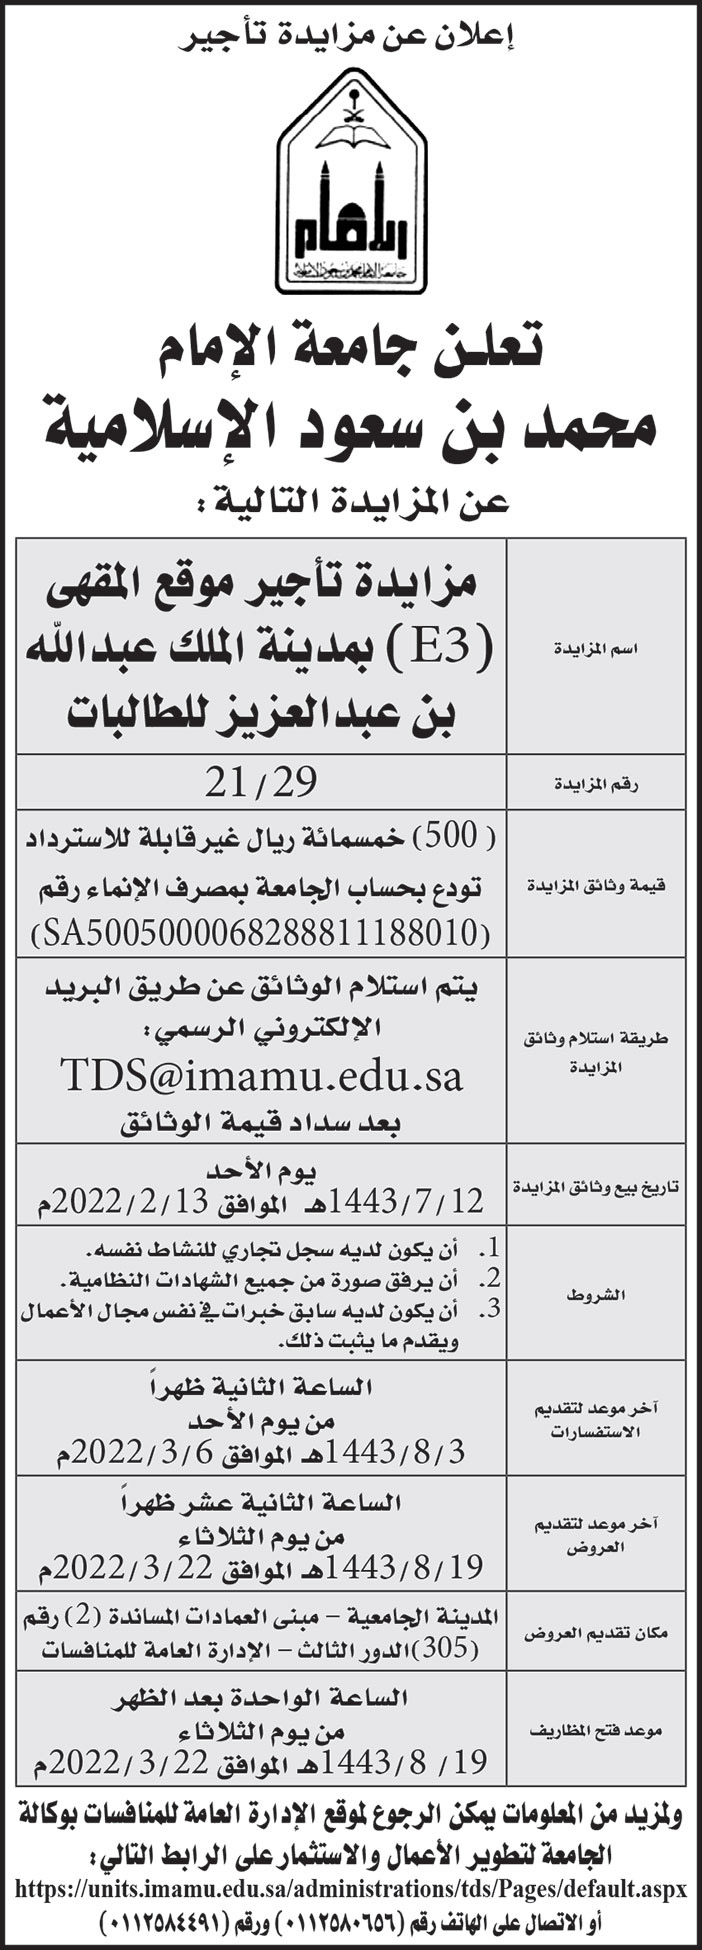 جامعة الإمام محمد بن سعود الإسلامية تعلن عن مزايدة تأجير موقع المقهى (E3) بمدينة الملك عبدالله بن عبدالعزيز للطالبات 